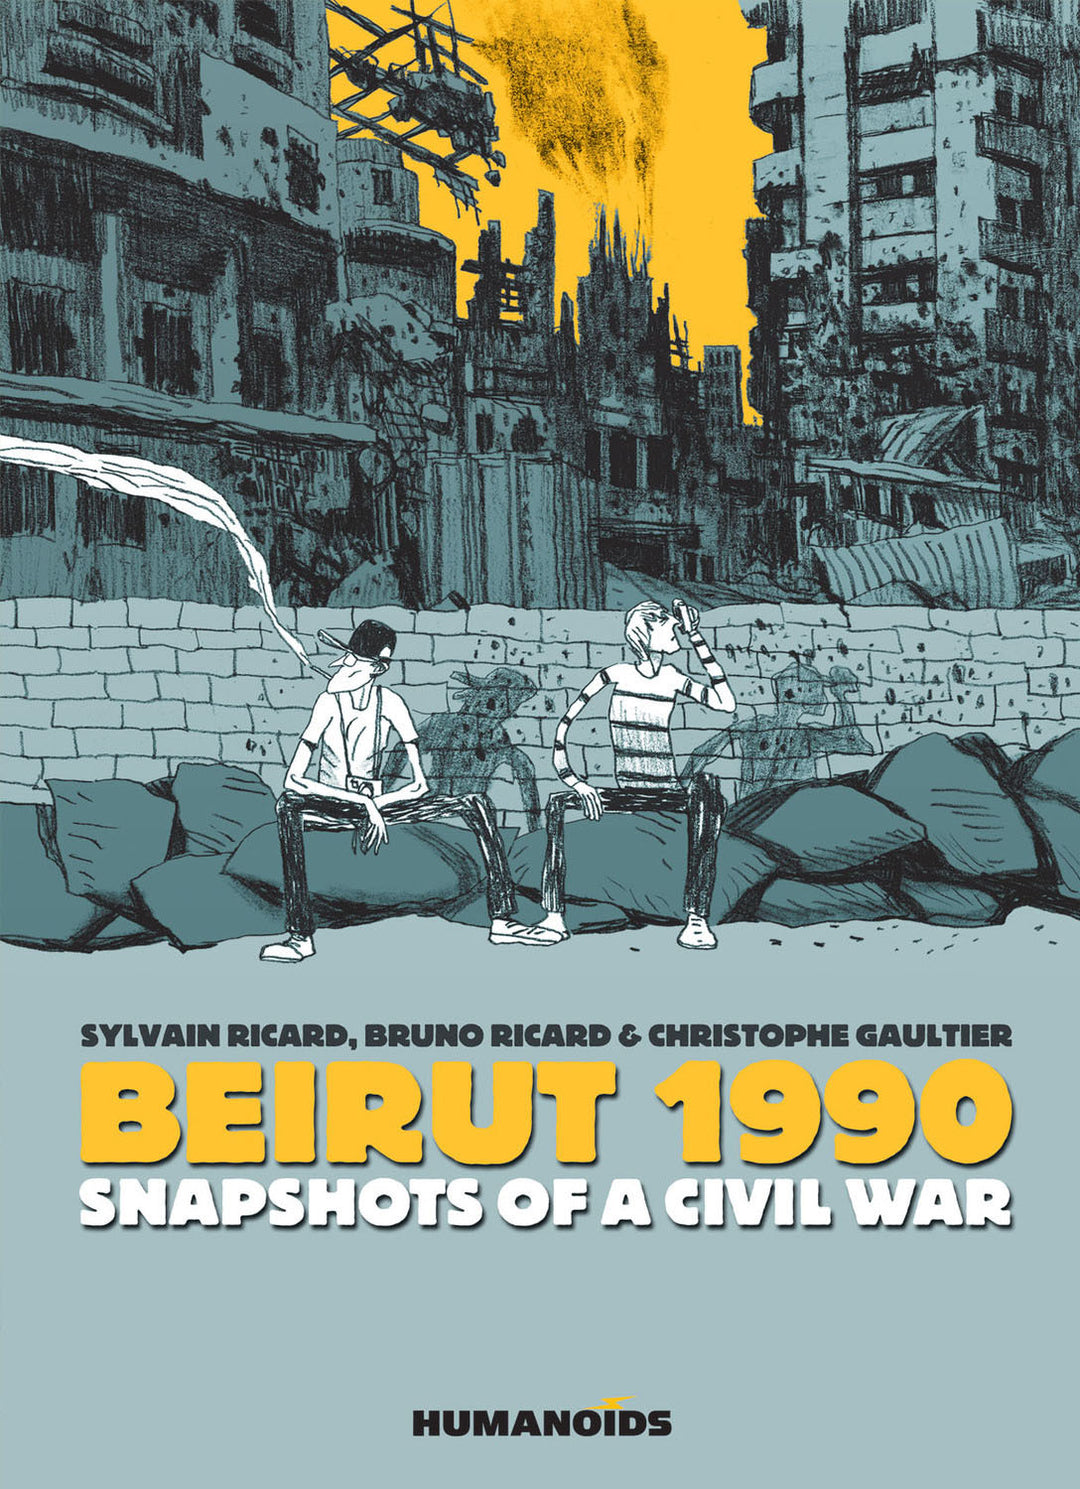 Beirut 1990: Snapshots of a Civil War